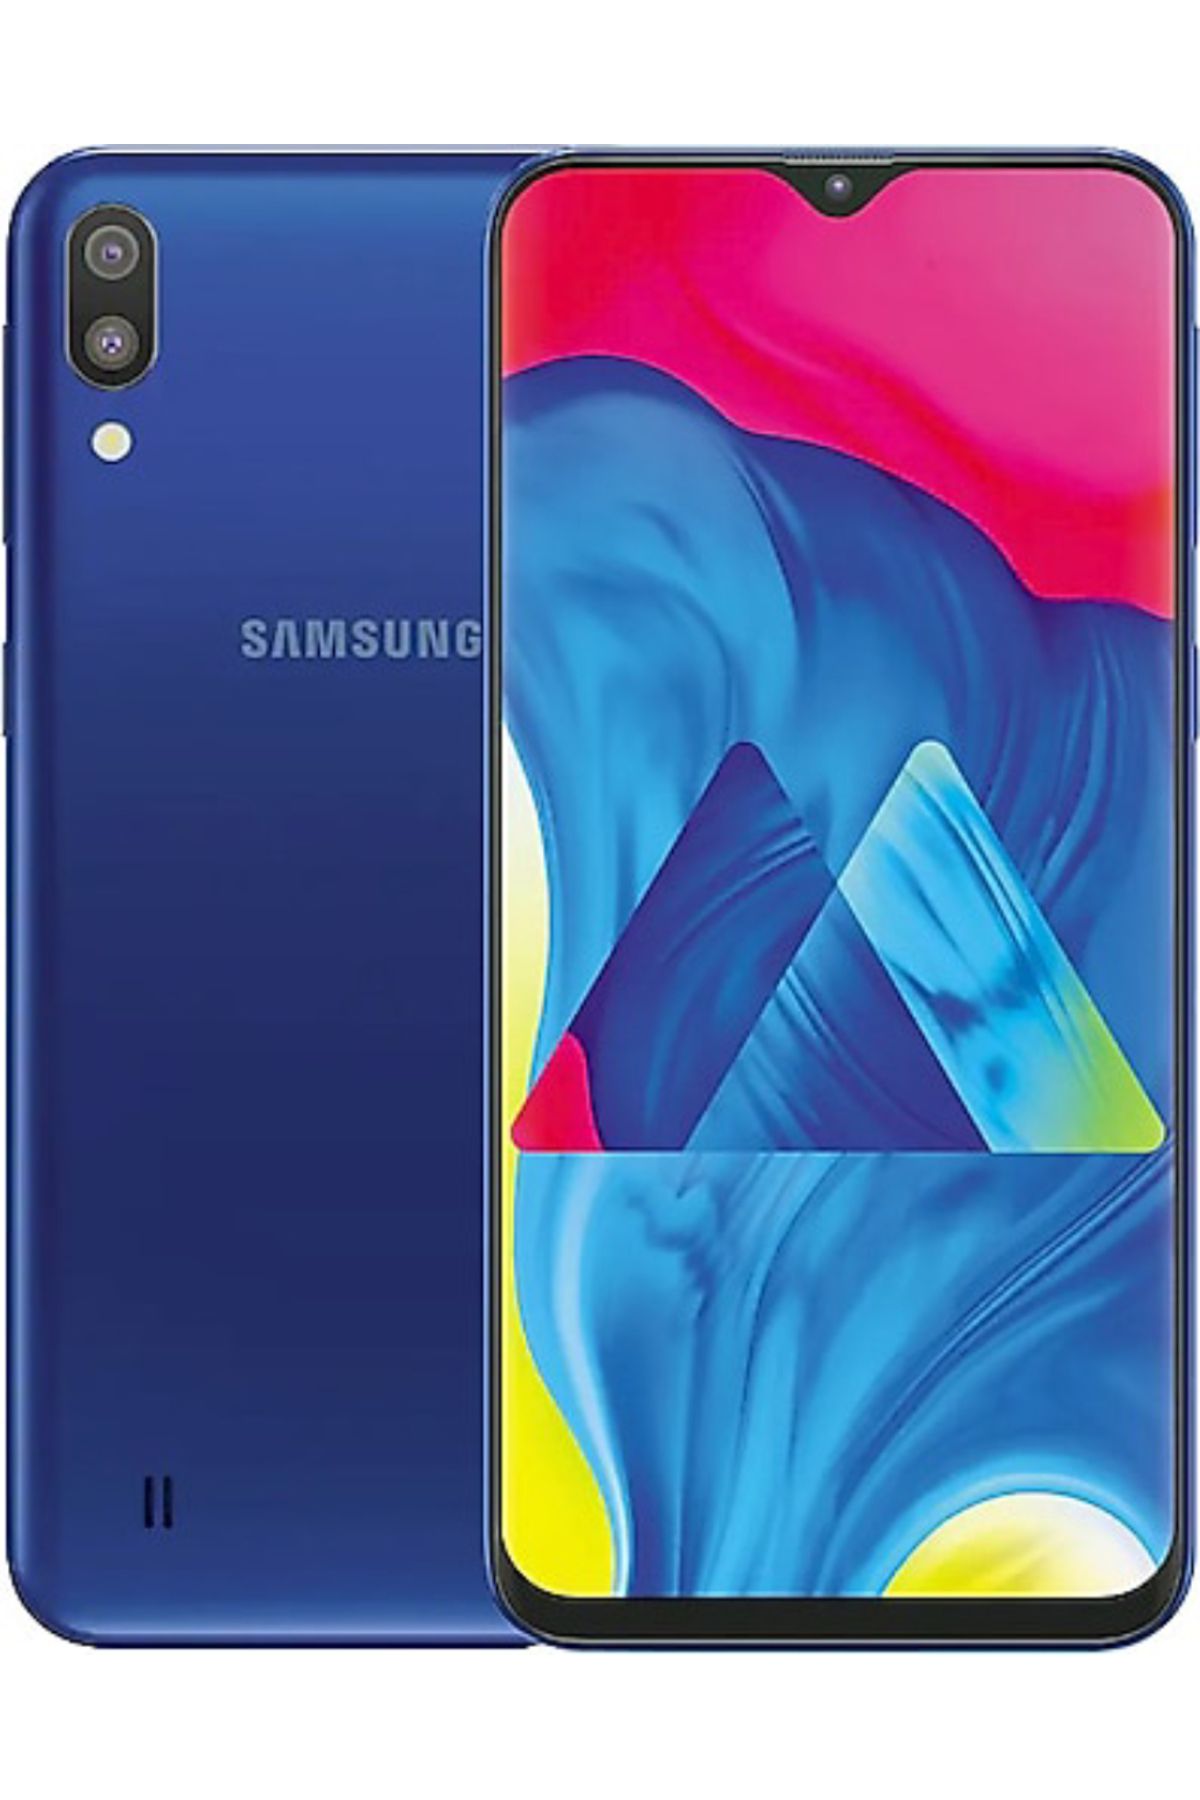 Samsung YENİLENMİŞ Samsung Galaxy M10 16 GB Mavi Cep Telefonu